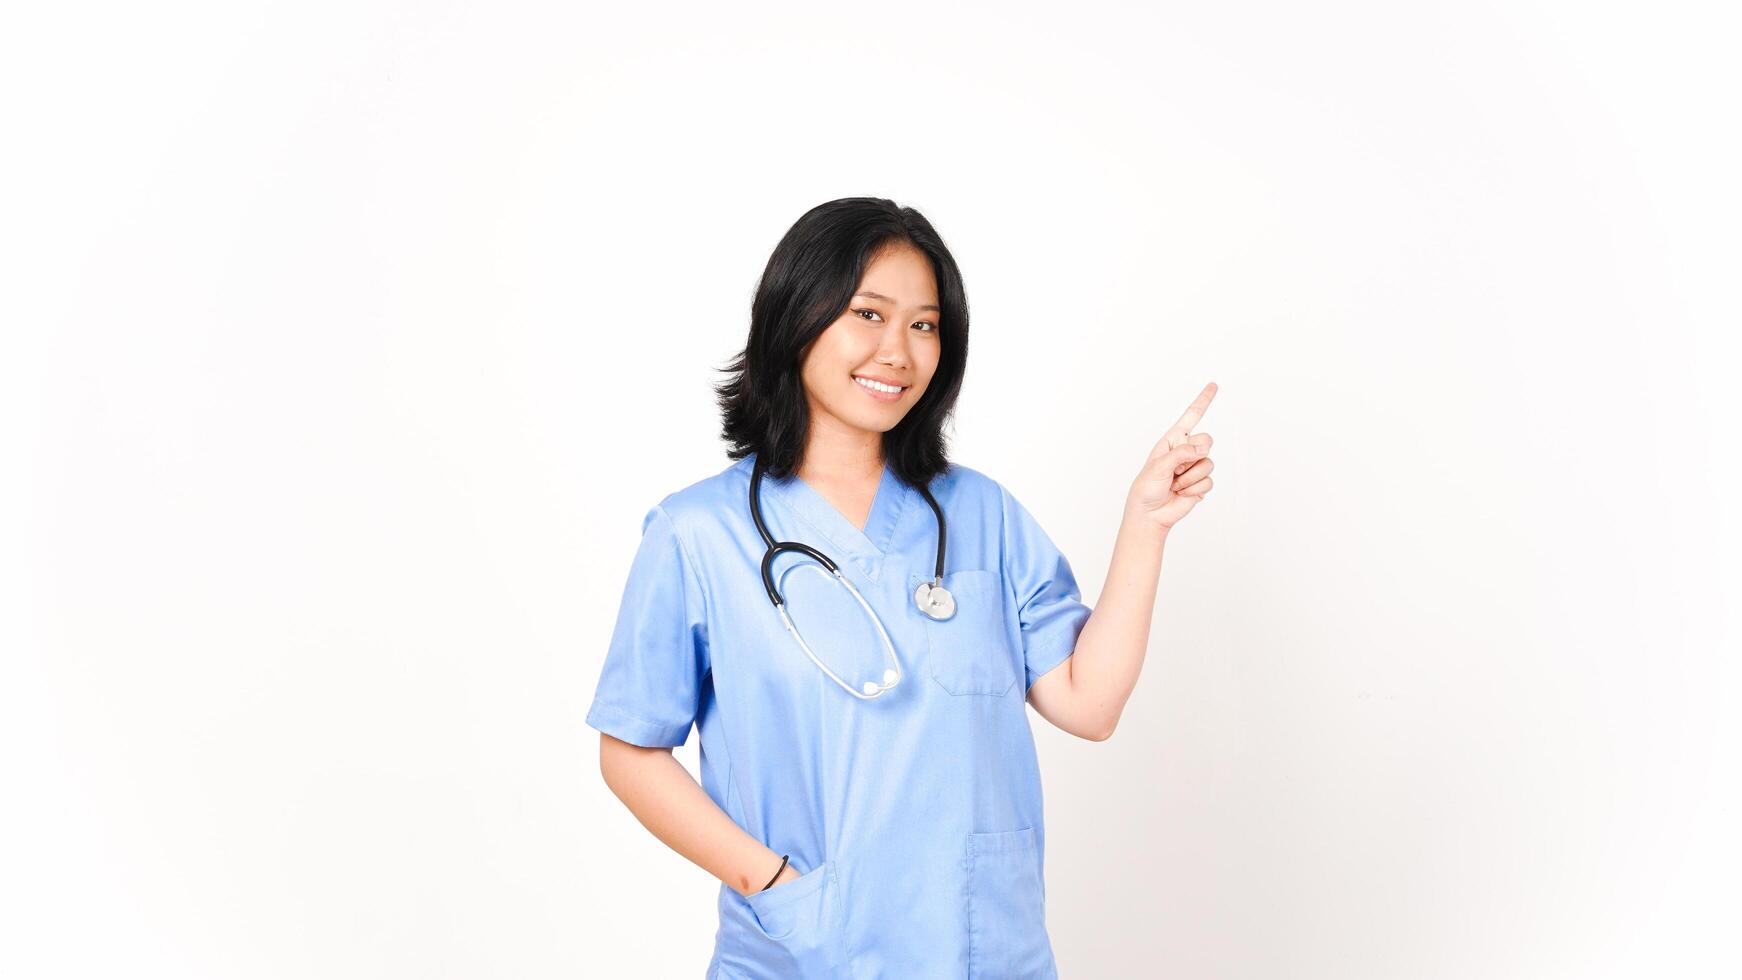 jung asiatisch weiblich Arzt zeigen Seite Kopieren Raum isoliert auf Weiß Hintergrund foto